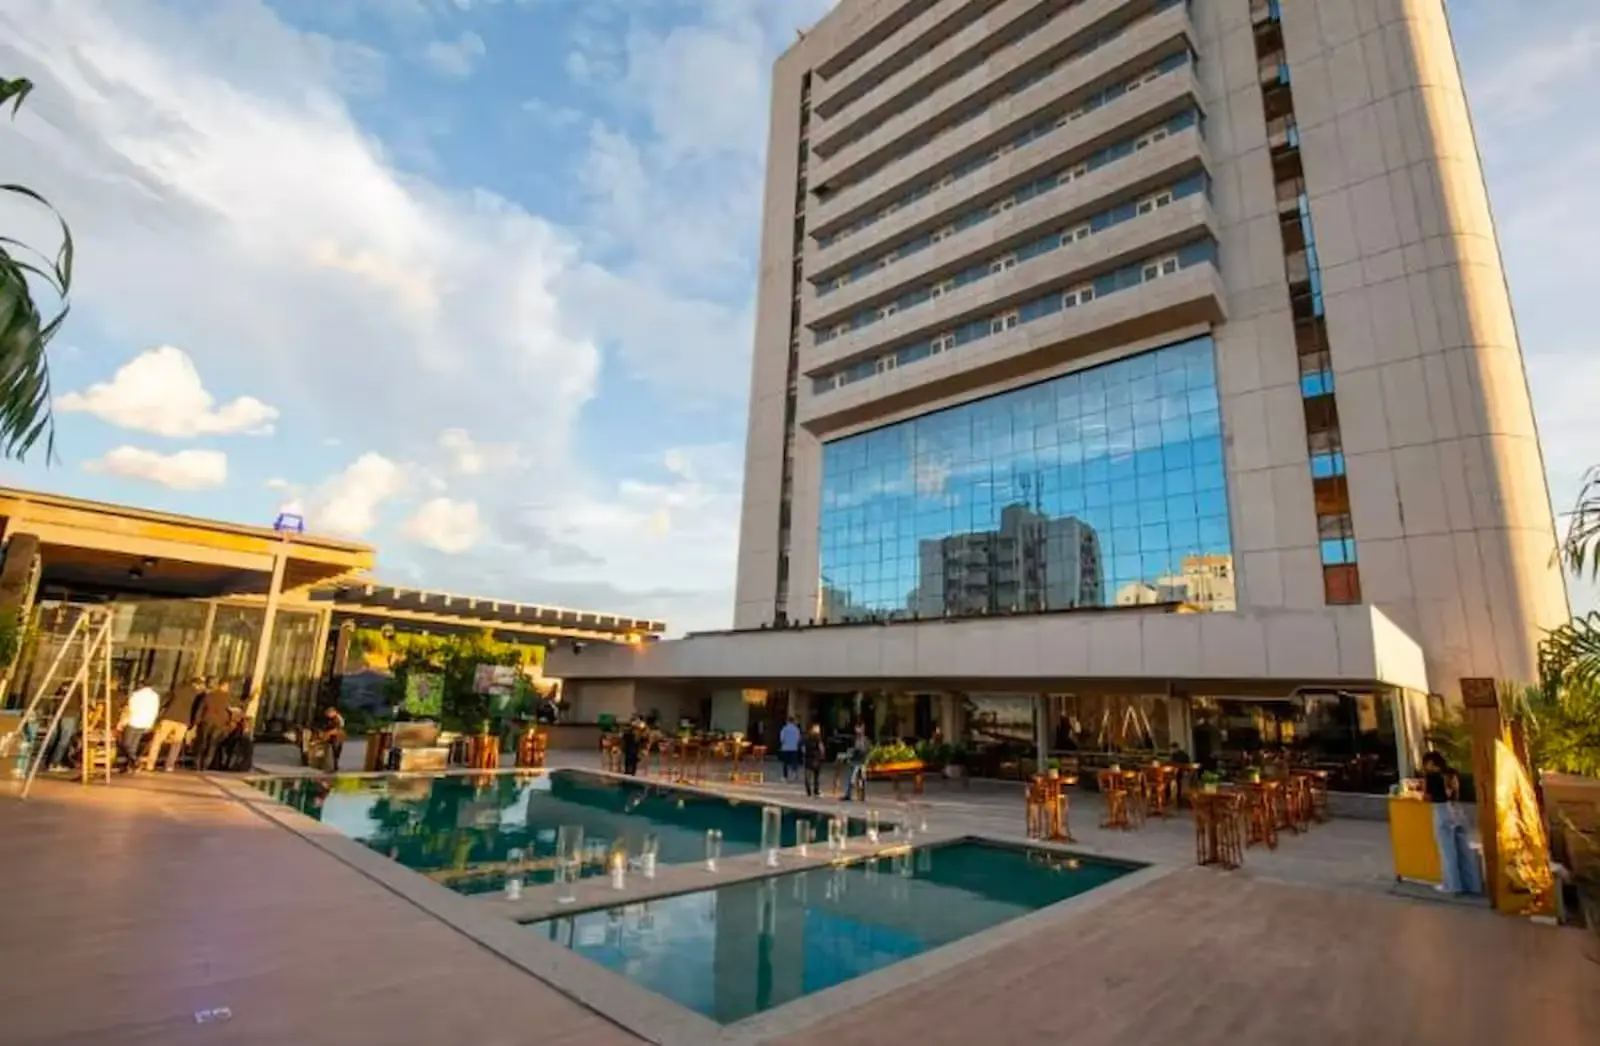 Justiça libera empréstimo de R$ 15 milhões para retomada de hotel em Cuiabá